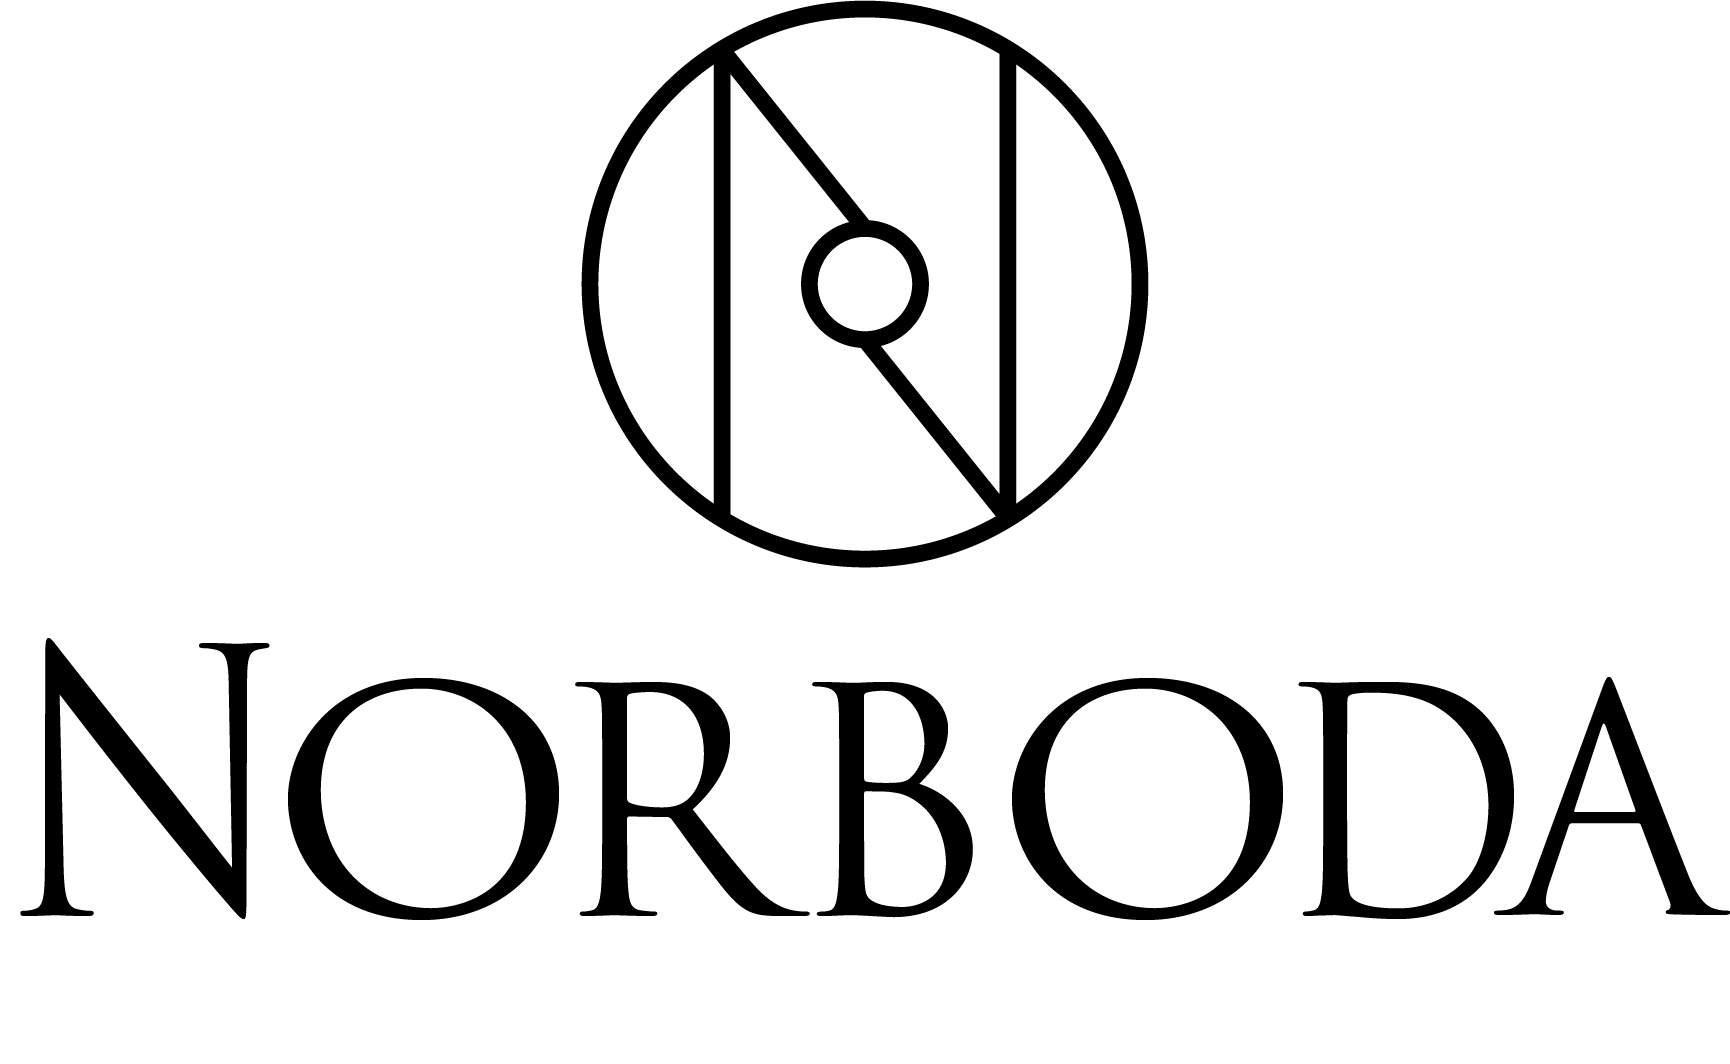 Norboda logo